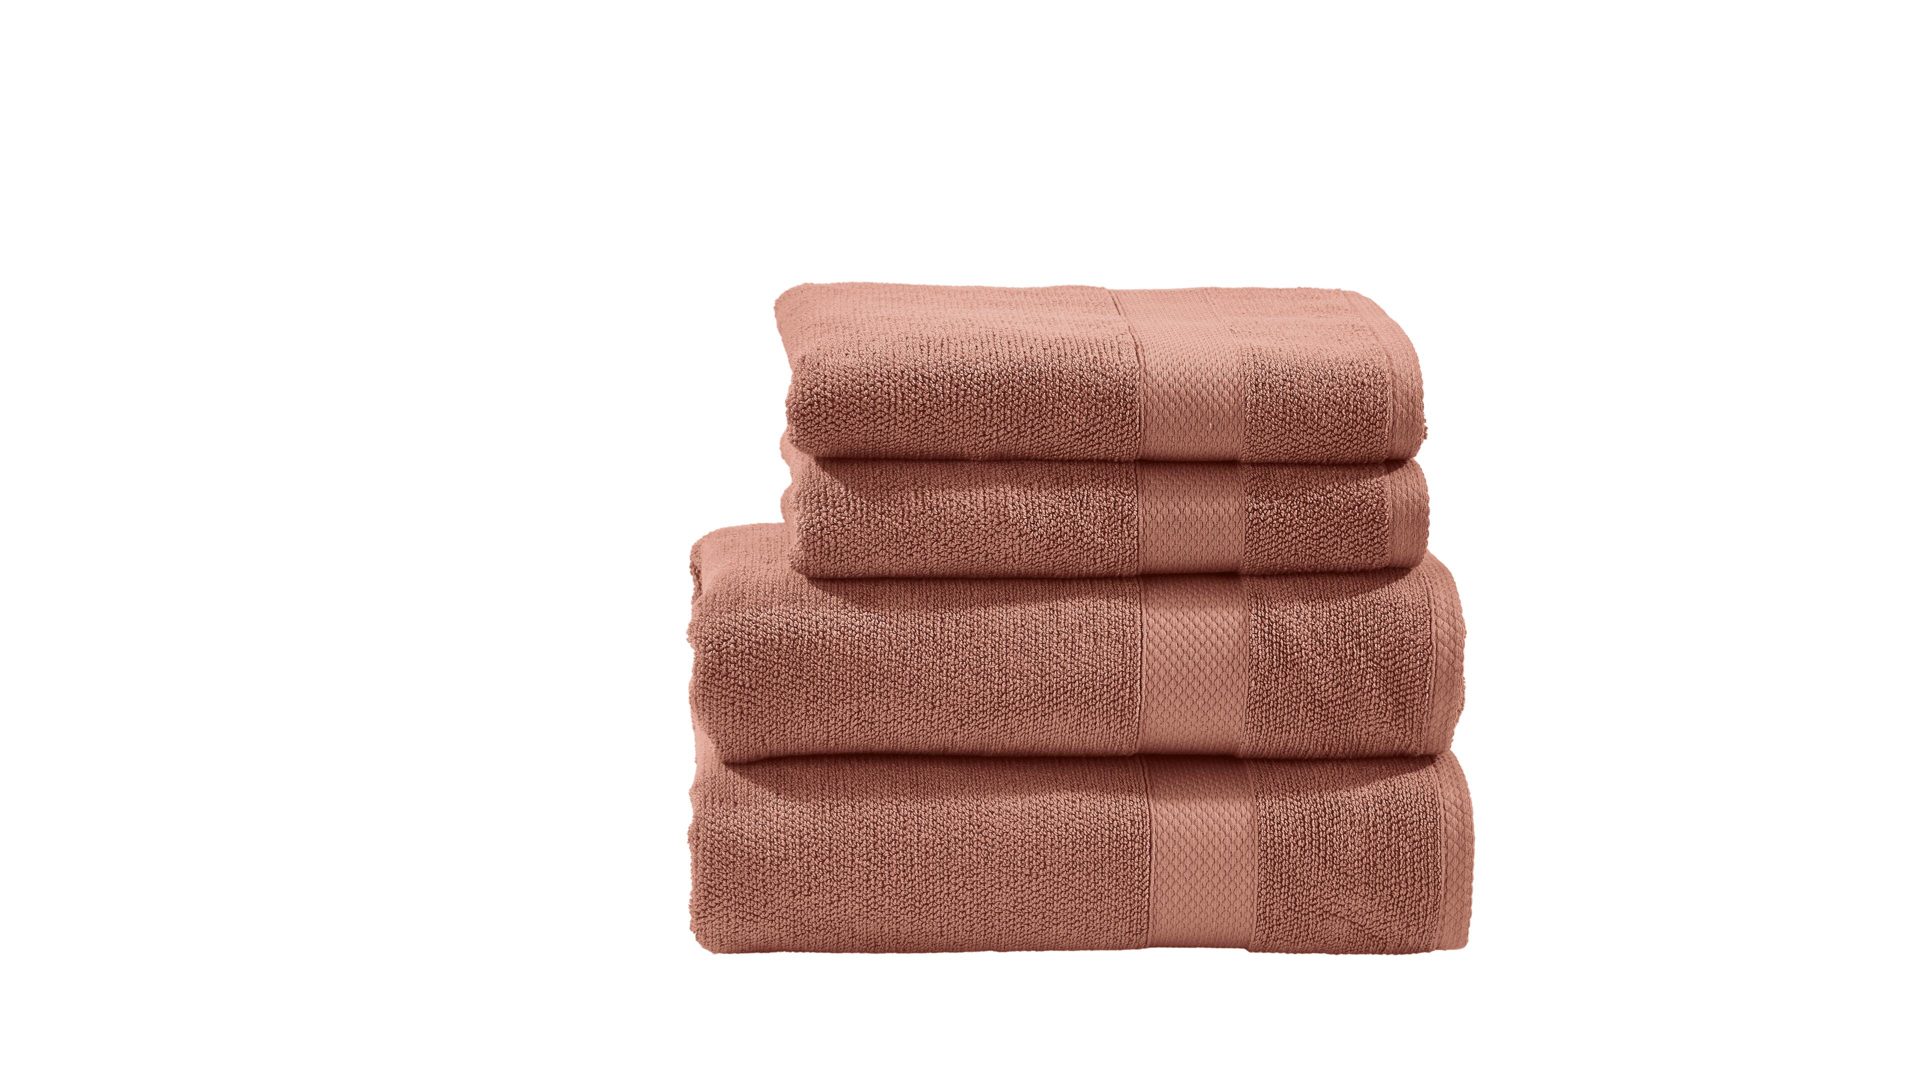 Handtuch-Set Done® by karabel home company aus Stoff in Orange DONE® Handtuch-Set Deluxe - Heimtextilien wüstensandfarbene Baumwolle – vierteilig